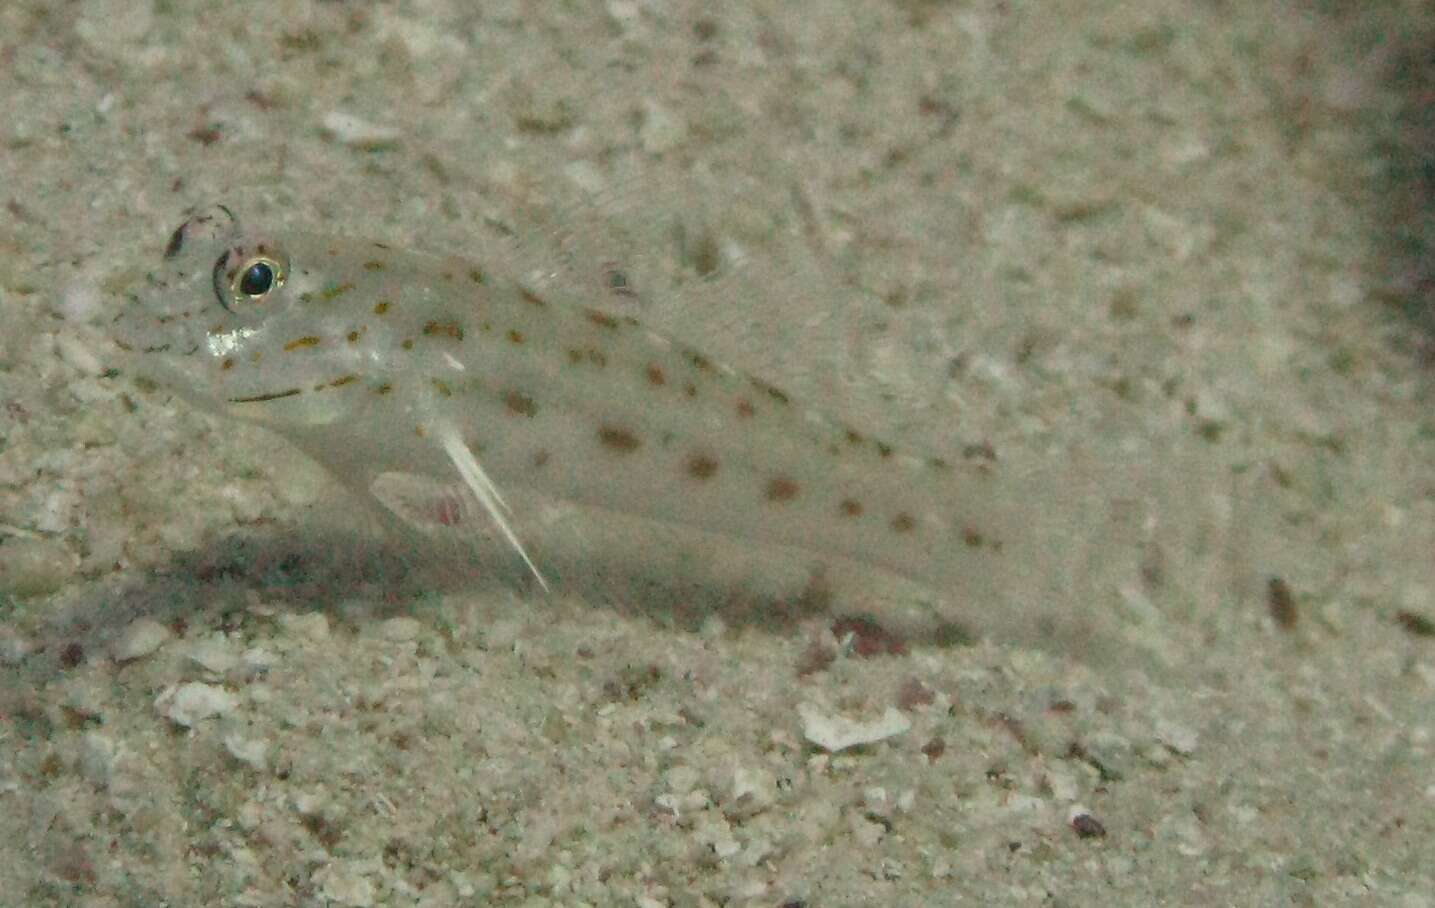 Image of Saffron shrimp-goby